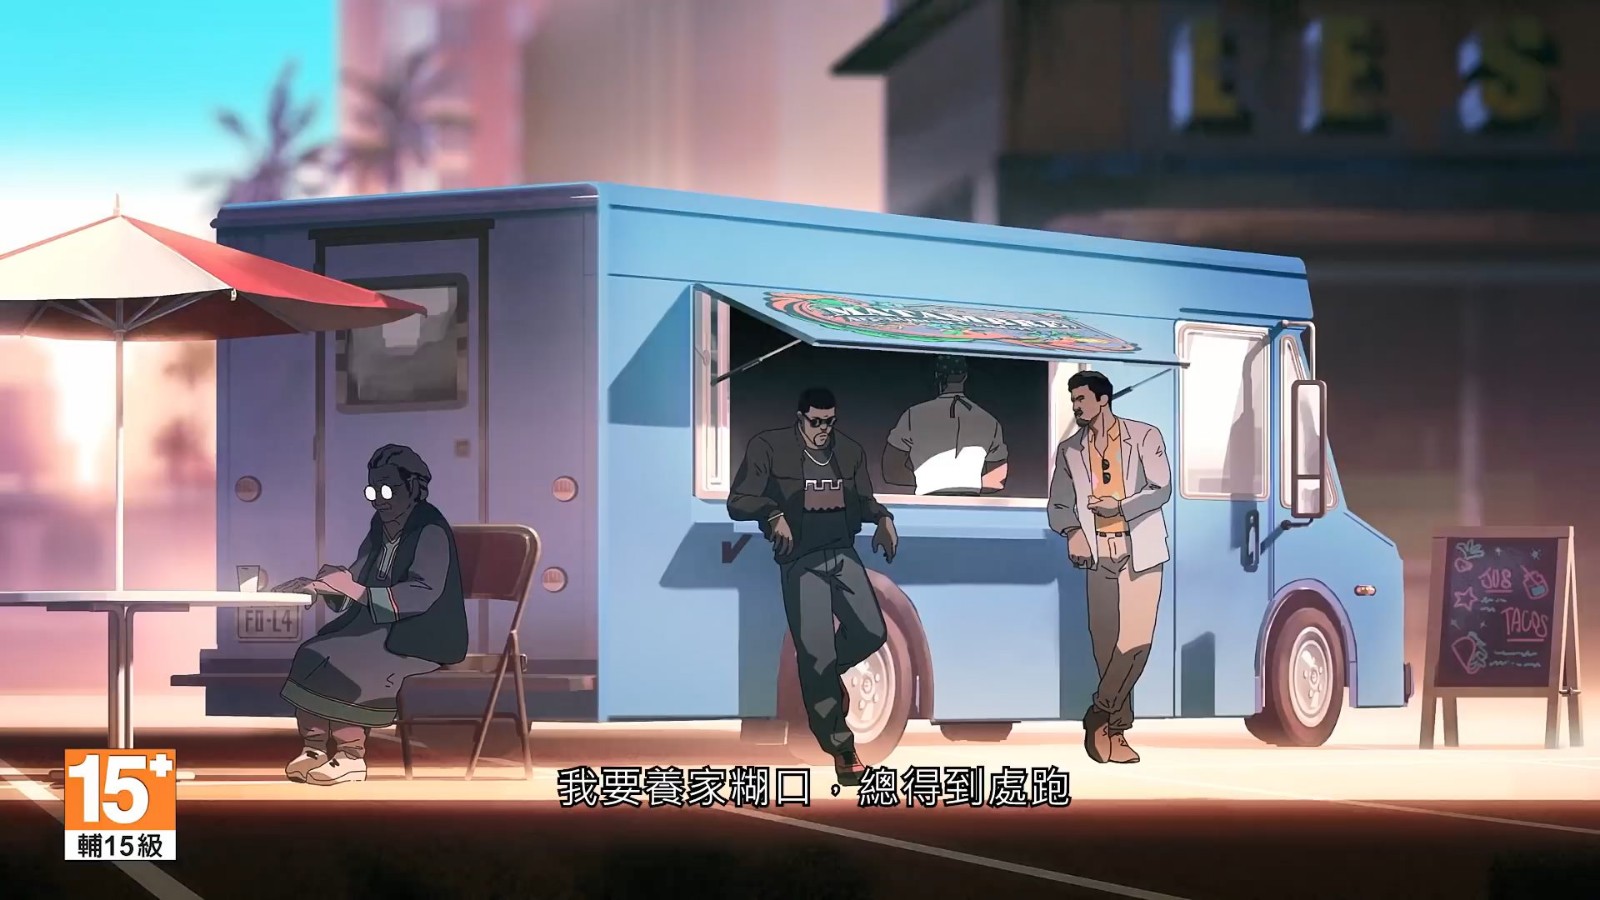 《彩虹六号》发布动画宣传片 讲述新干员Flores的故事